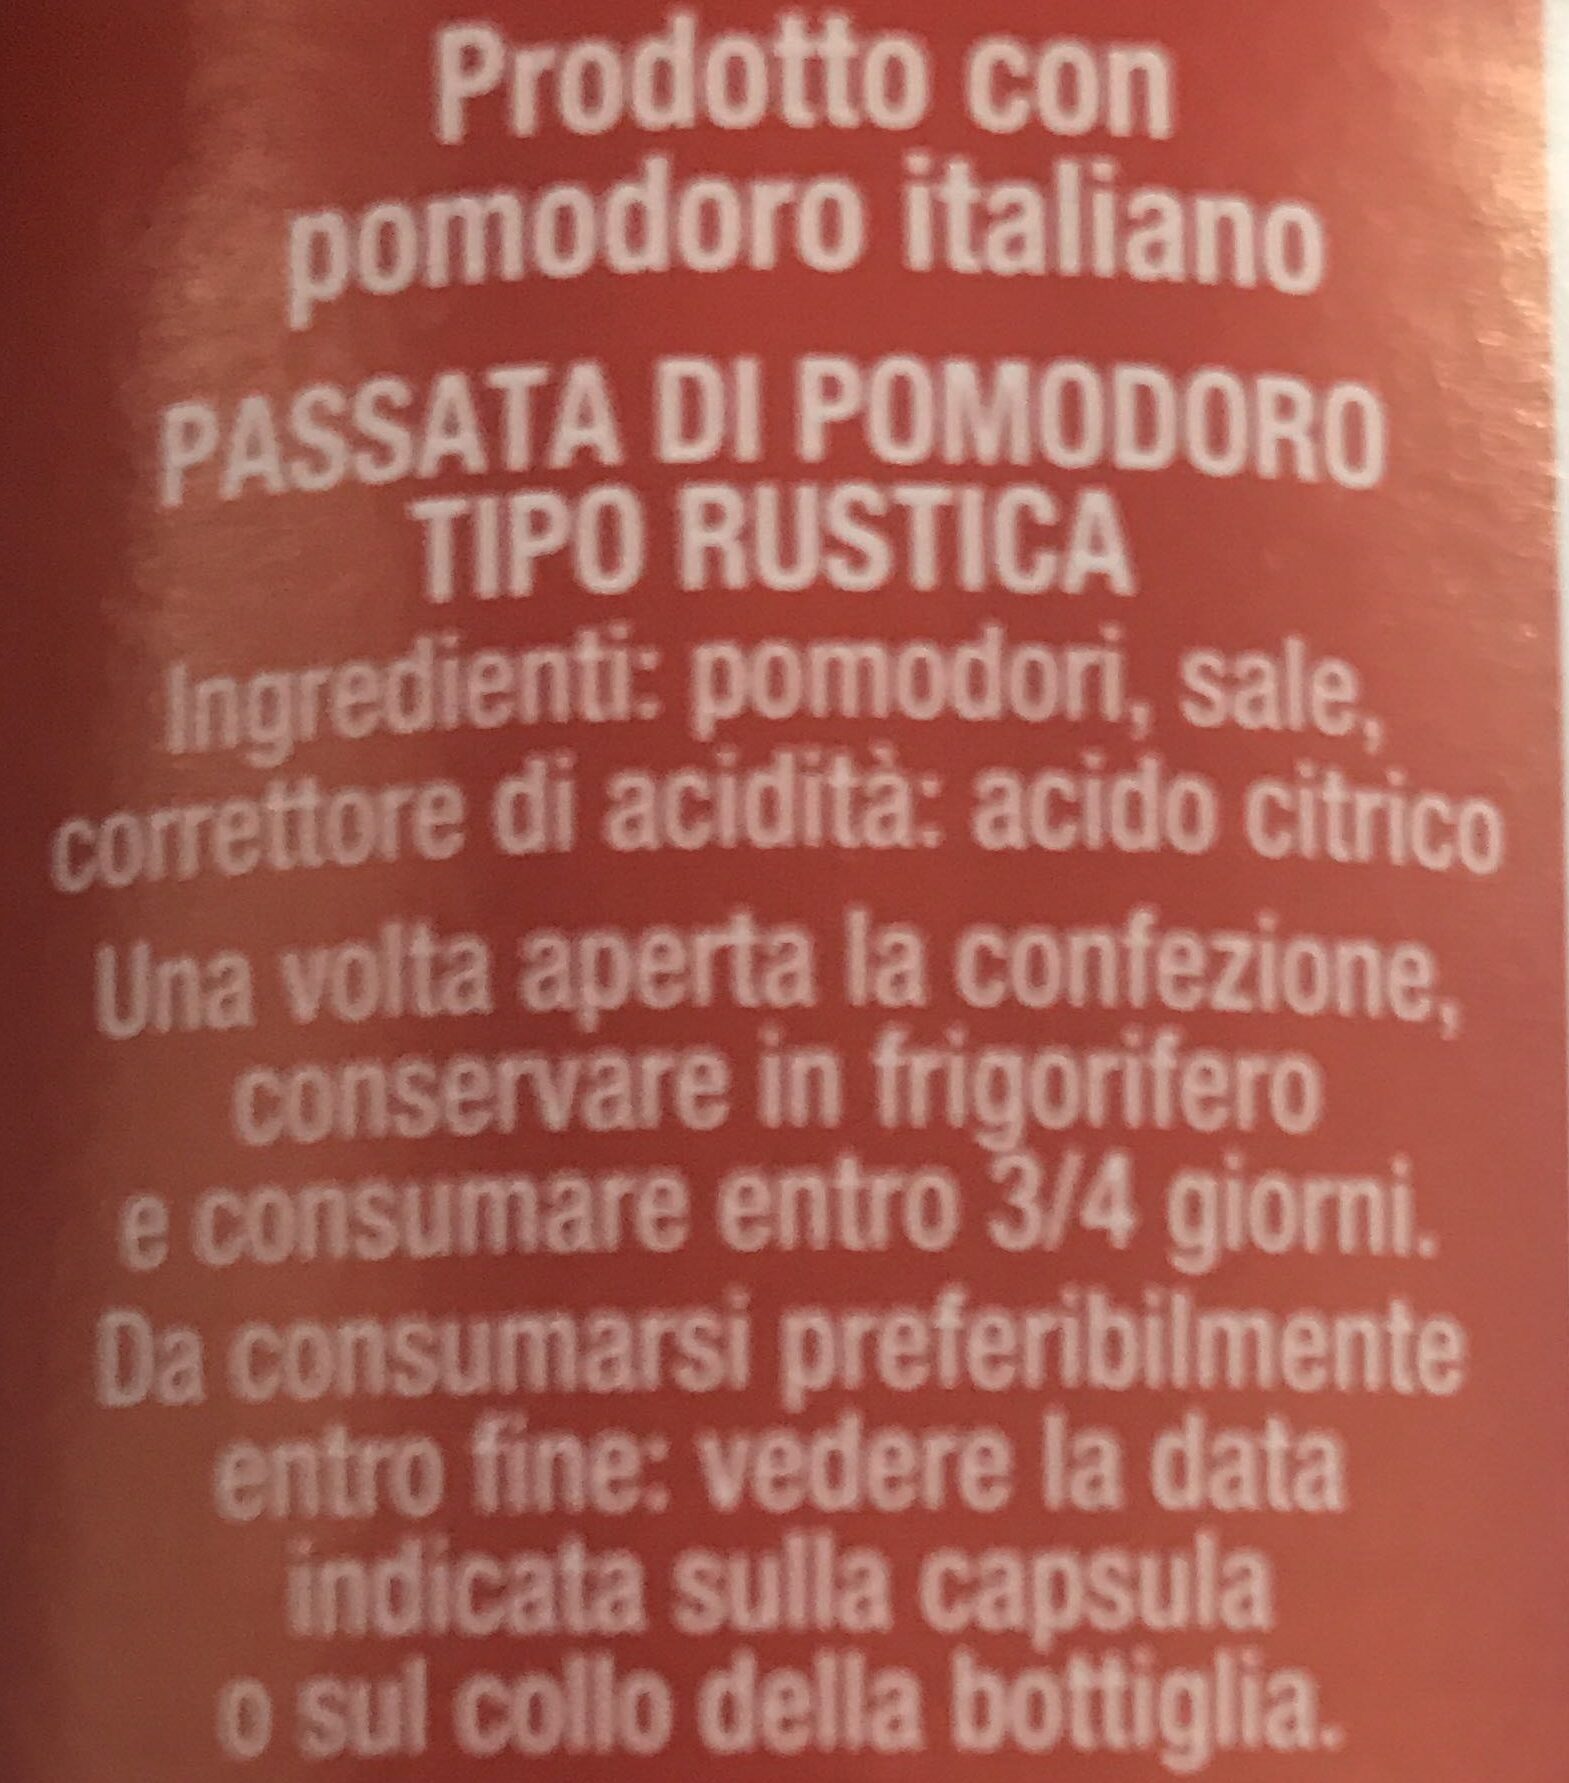 Passata di pomodoro - tipo rustica - Ingredients - it